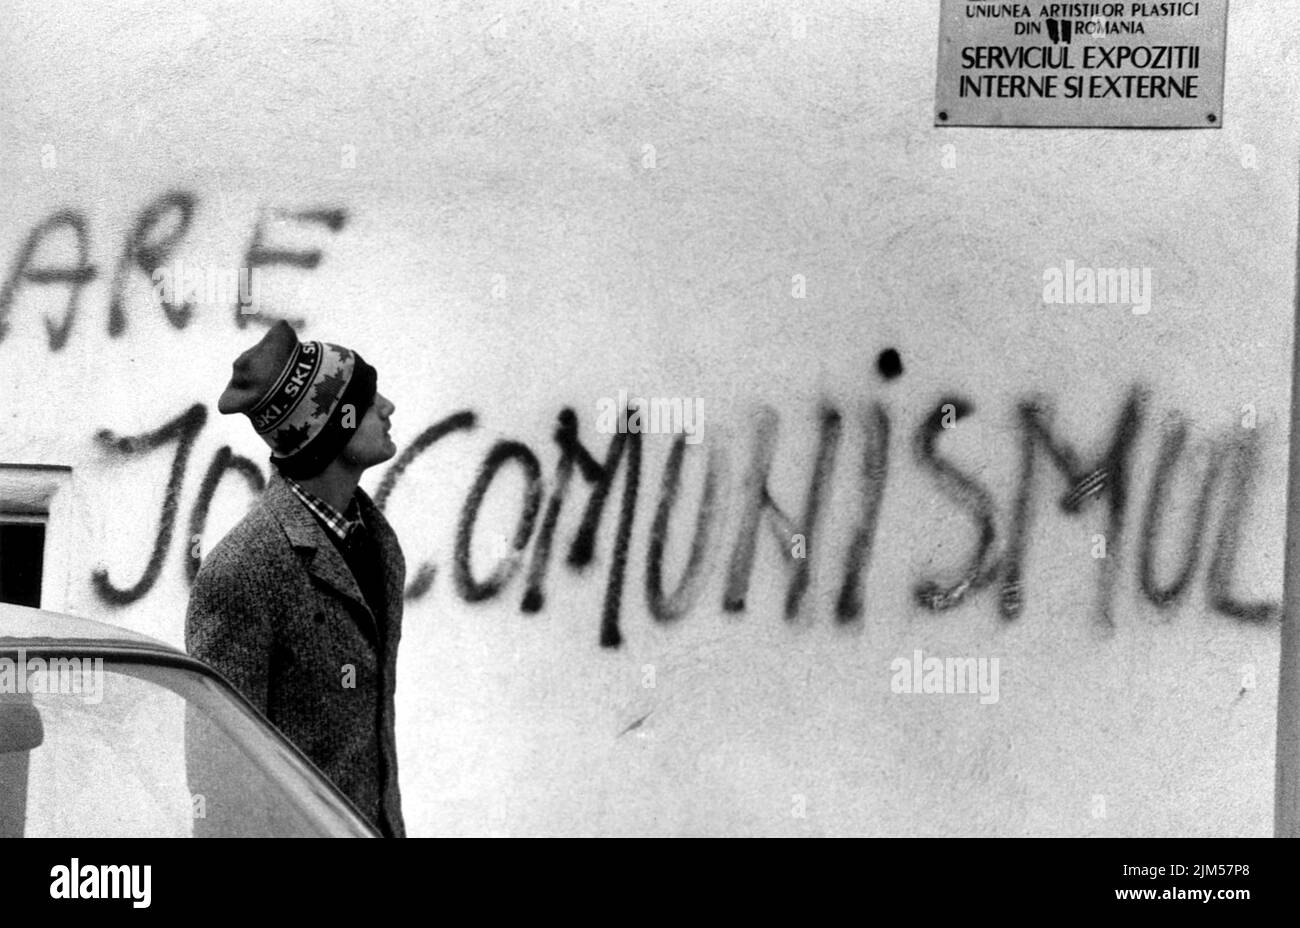 Bukarest, Rumänien, Januar 1990. Tage nach der antikommunistischen Revolution in Rumänien von 1989 kommt ein Mann an einem Gebäude vorbei, in dem jemand „nieder mit dem Kommunismus“ besprüht, eine Handlung, die einen Monat zuvor undenkbar war. Stockfoto